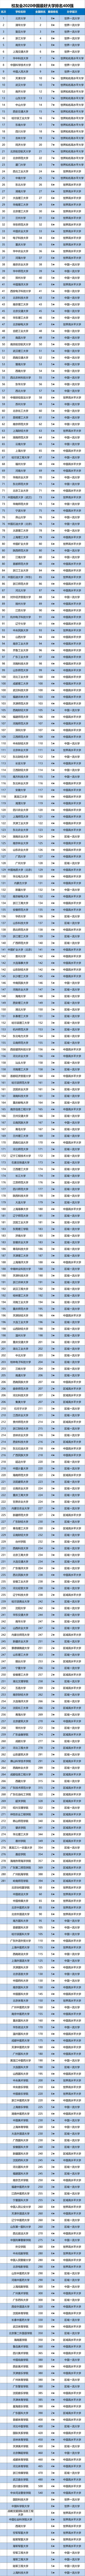 2020武汉学院排名_2020中国大学科研成果排行榜,中南大学排名第8,南大排